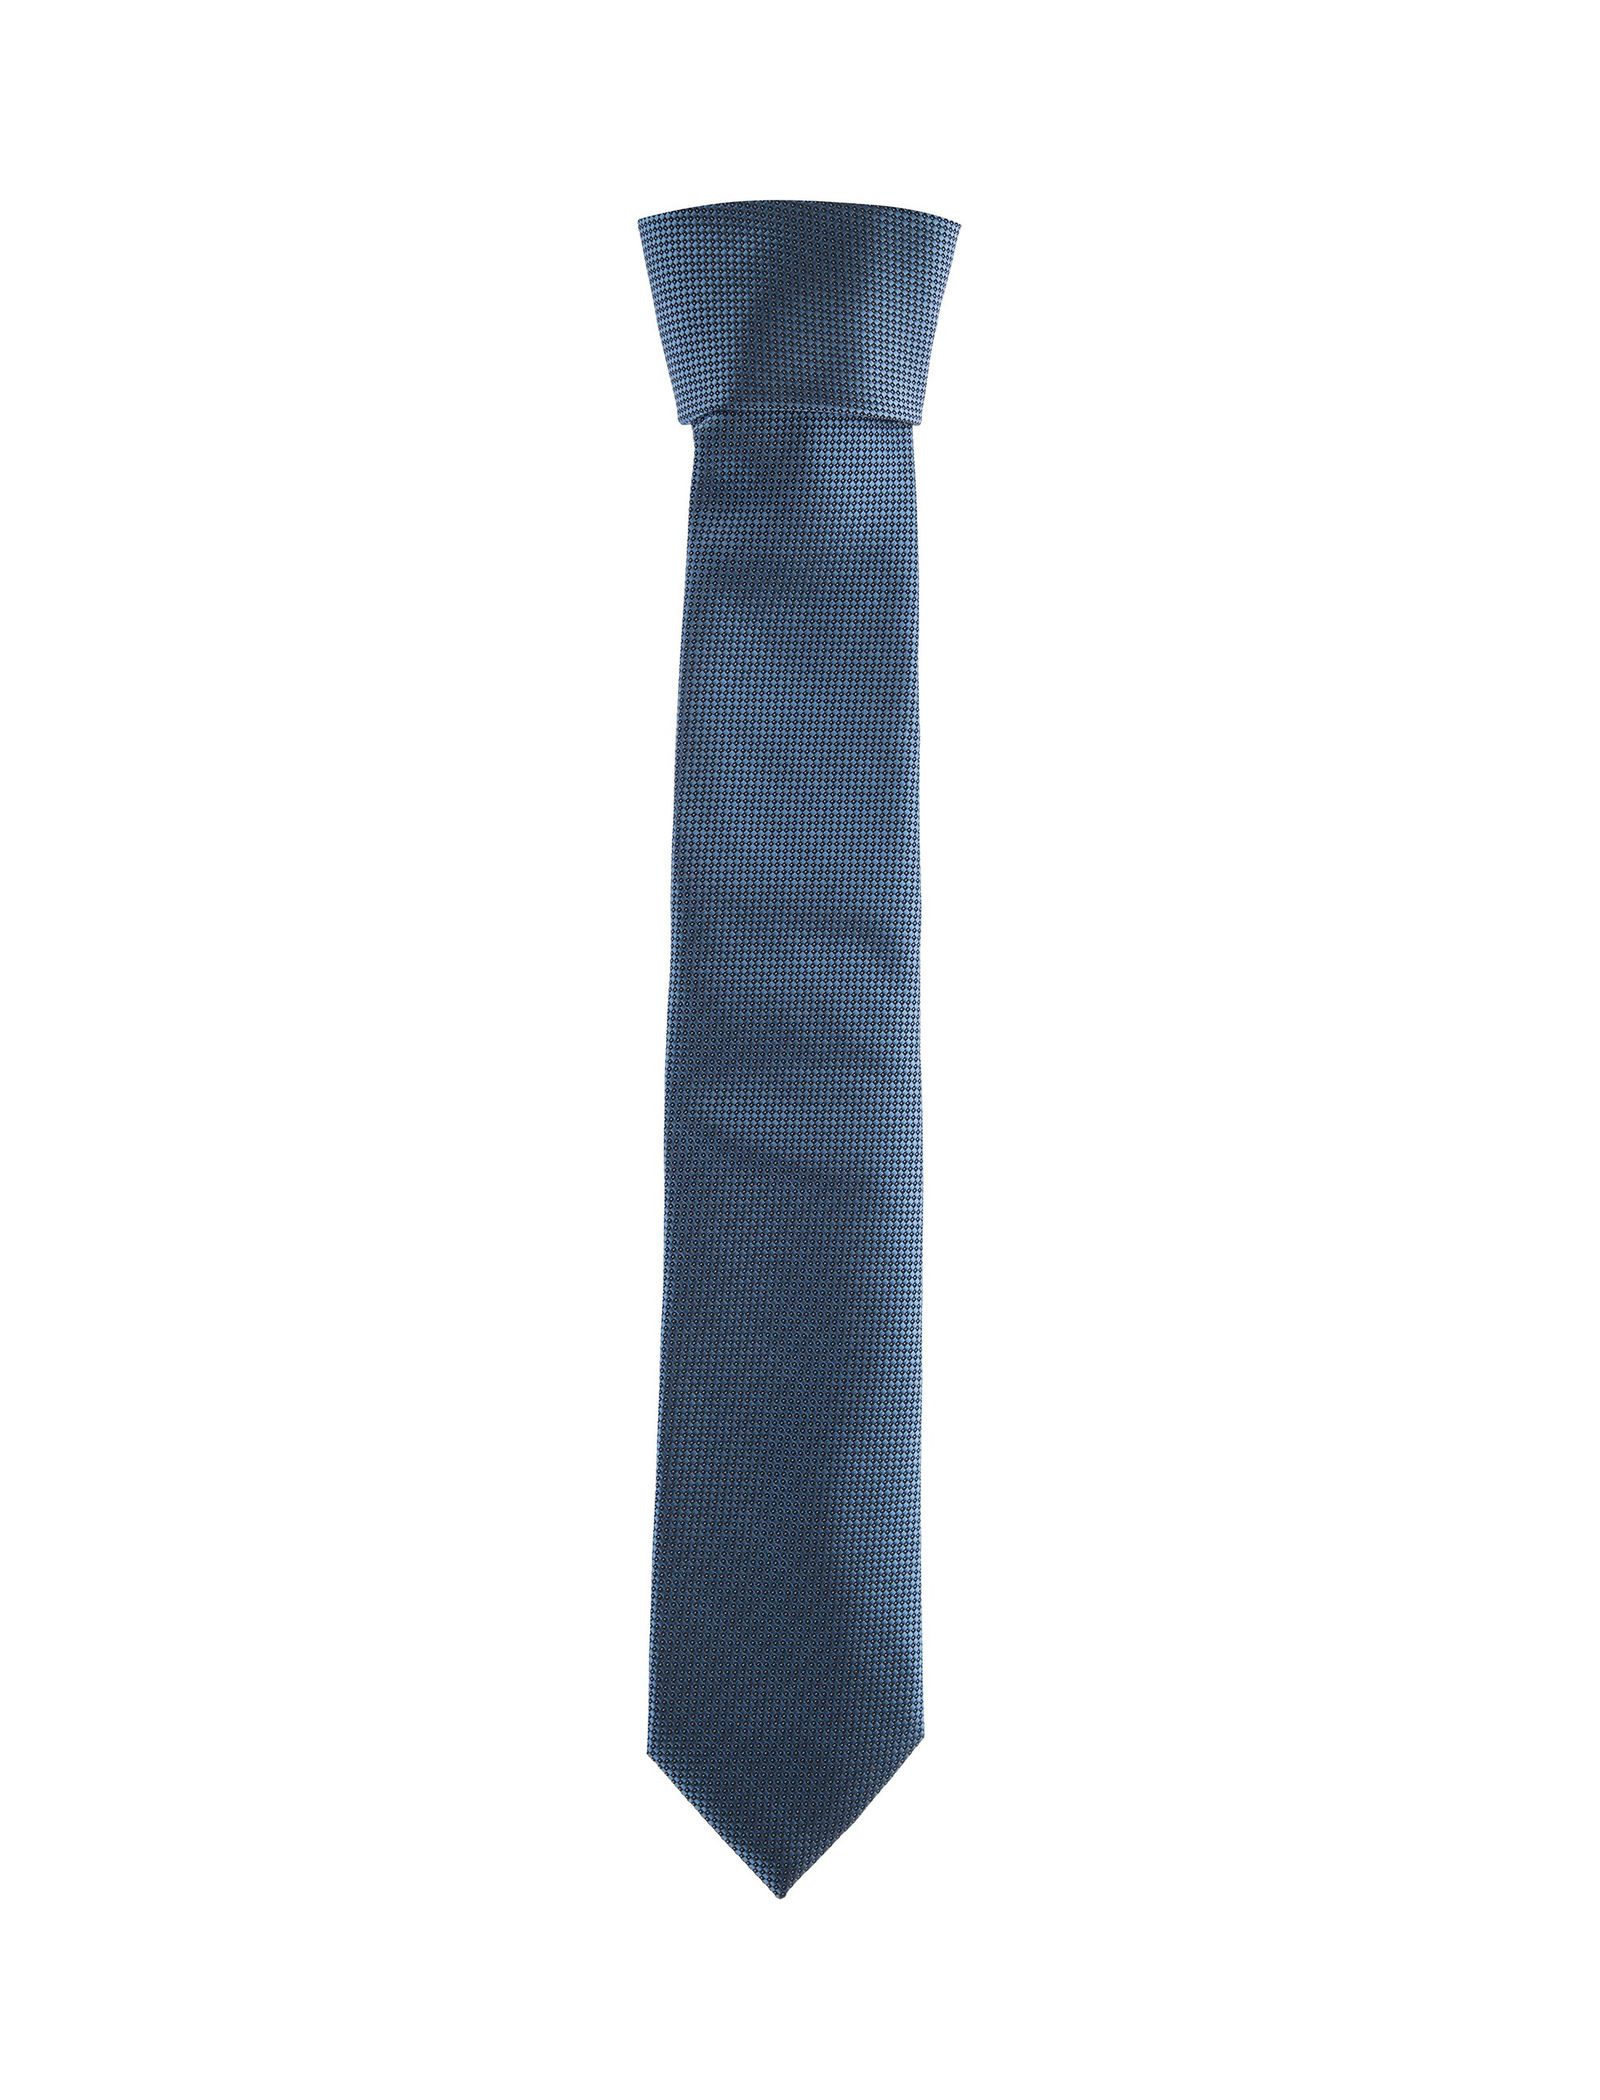 کراوات طرح دار مردانه - یوپیم - آبي - 1